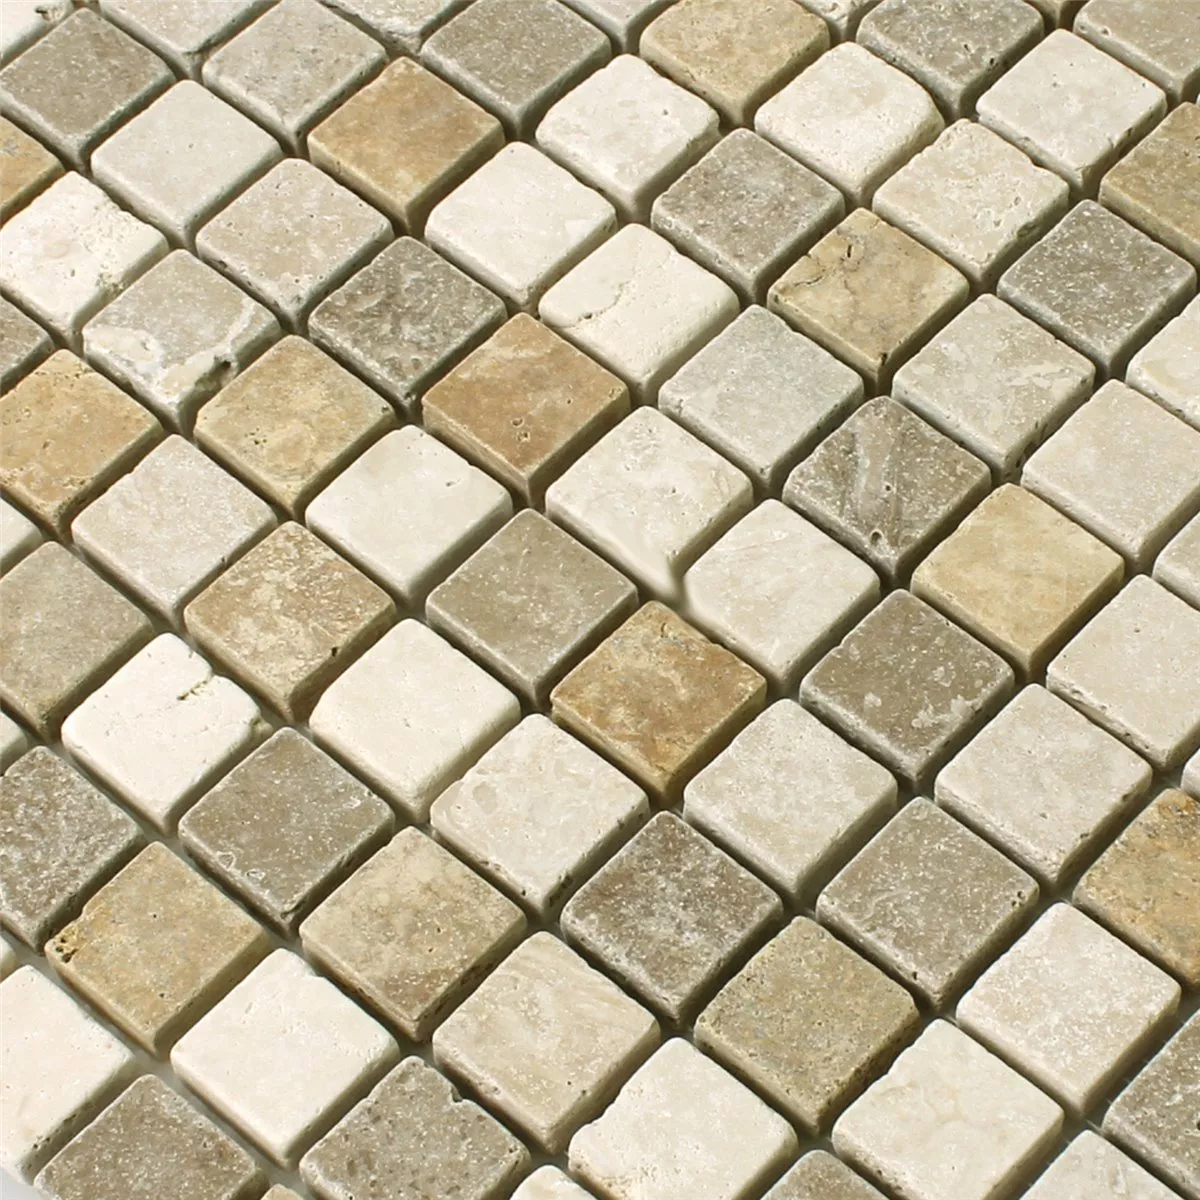 Mozaik Pločice Prirodni Kamen Smeđa Bež Crvena